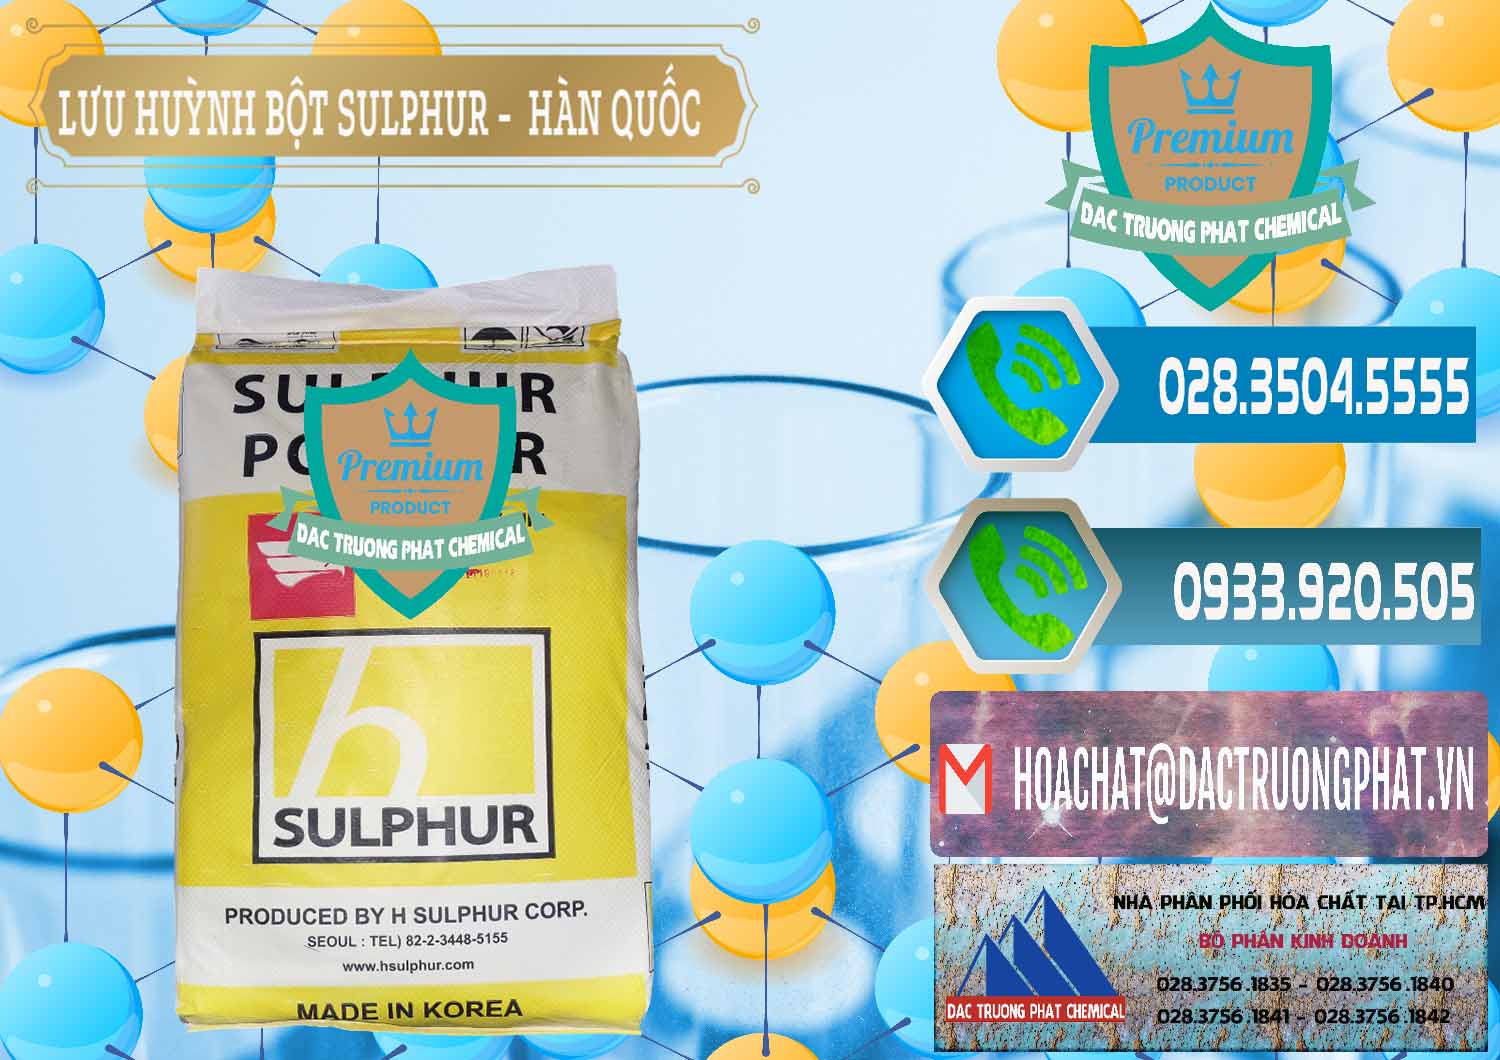 Công ty chuyên kinh doanh - bán Lưu huỳnh Bột - Sulfur Powder ( H Sulfur ) Hàn Quốc Korea - 0199 - Nơi bán & cung cấp hóa chất tại TP.HCM - congtyhoachat.net